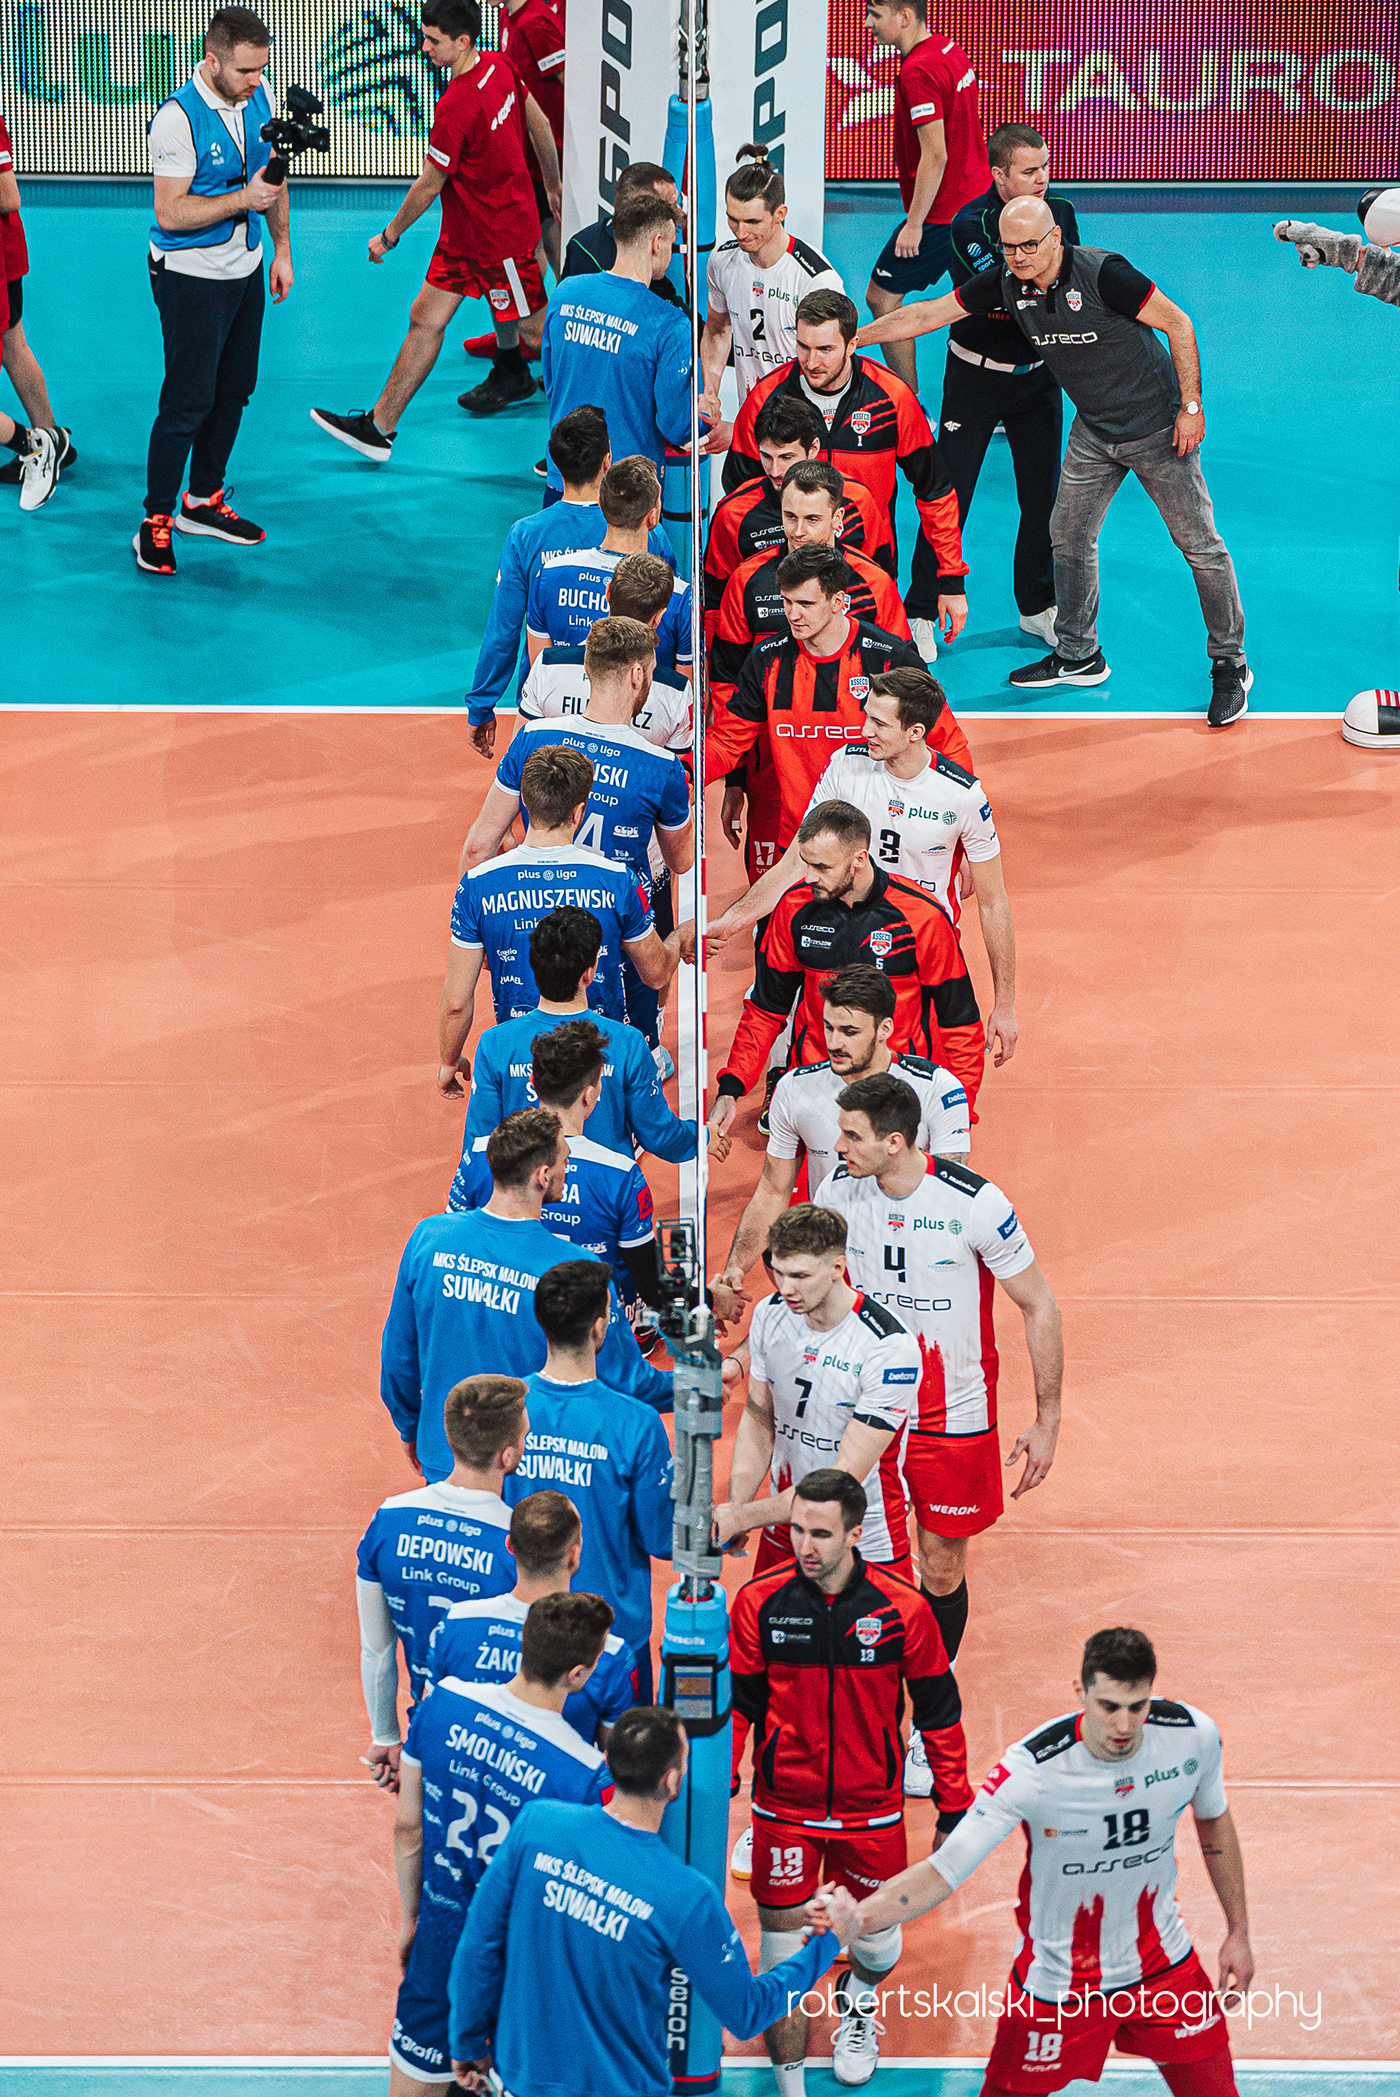 Asseco Resovia Fotografia Malow Suwałki match Photography  puchar polski rzeszow siatkówka sport volleyball